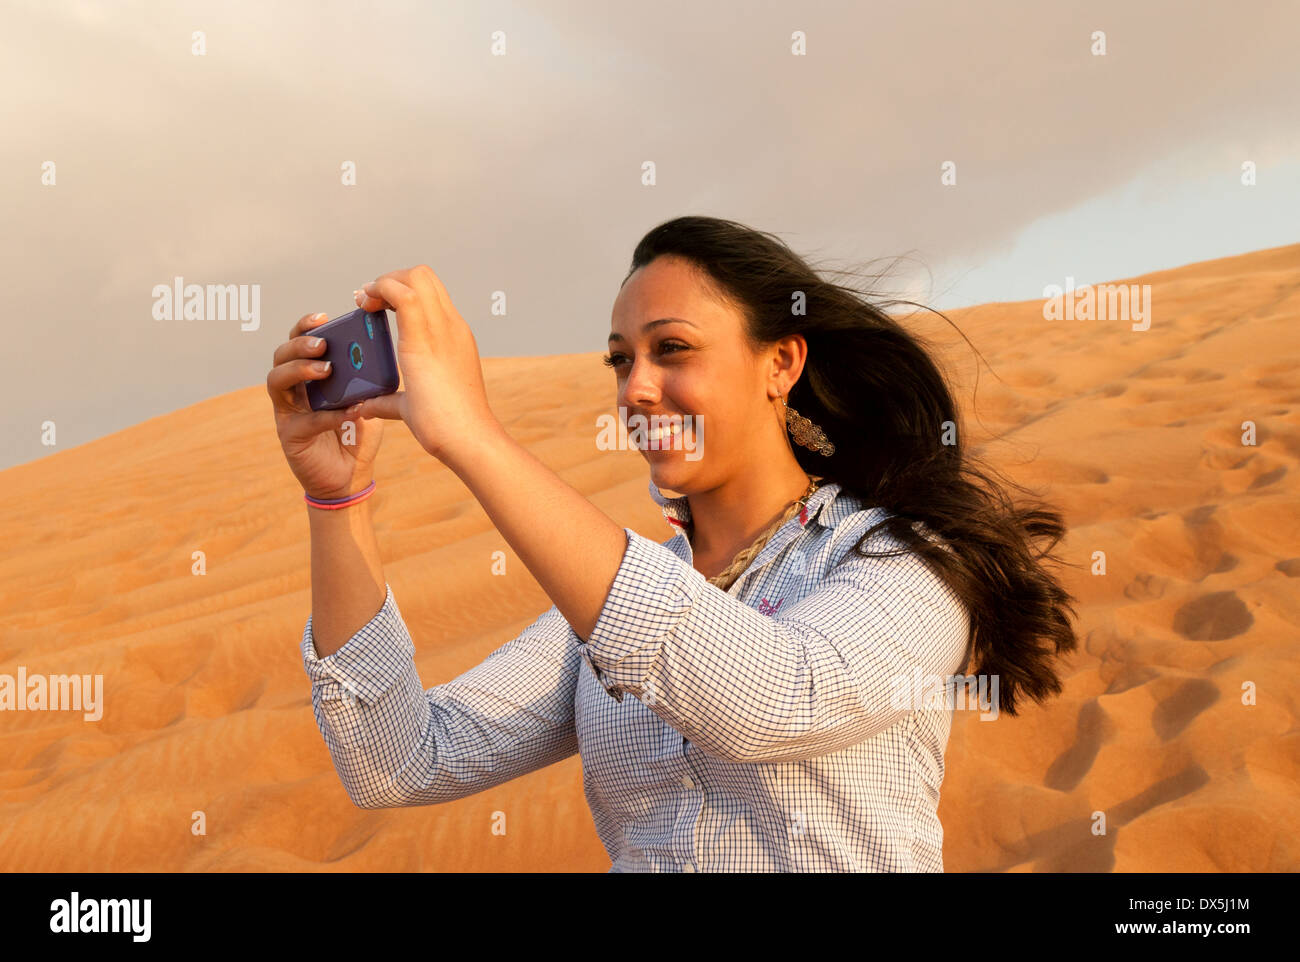 Frau fotografieren Selfie in der arabischen Wüste, im Urlaub in Dubai, Vereinigte Arabische Emirate, Vereinigte Arabische Emirate Naher Osten Stockfoto